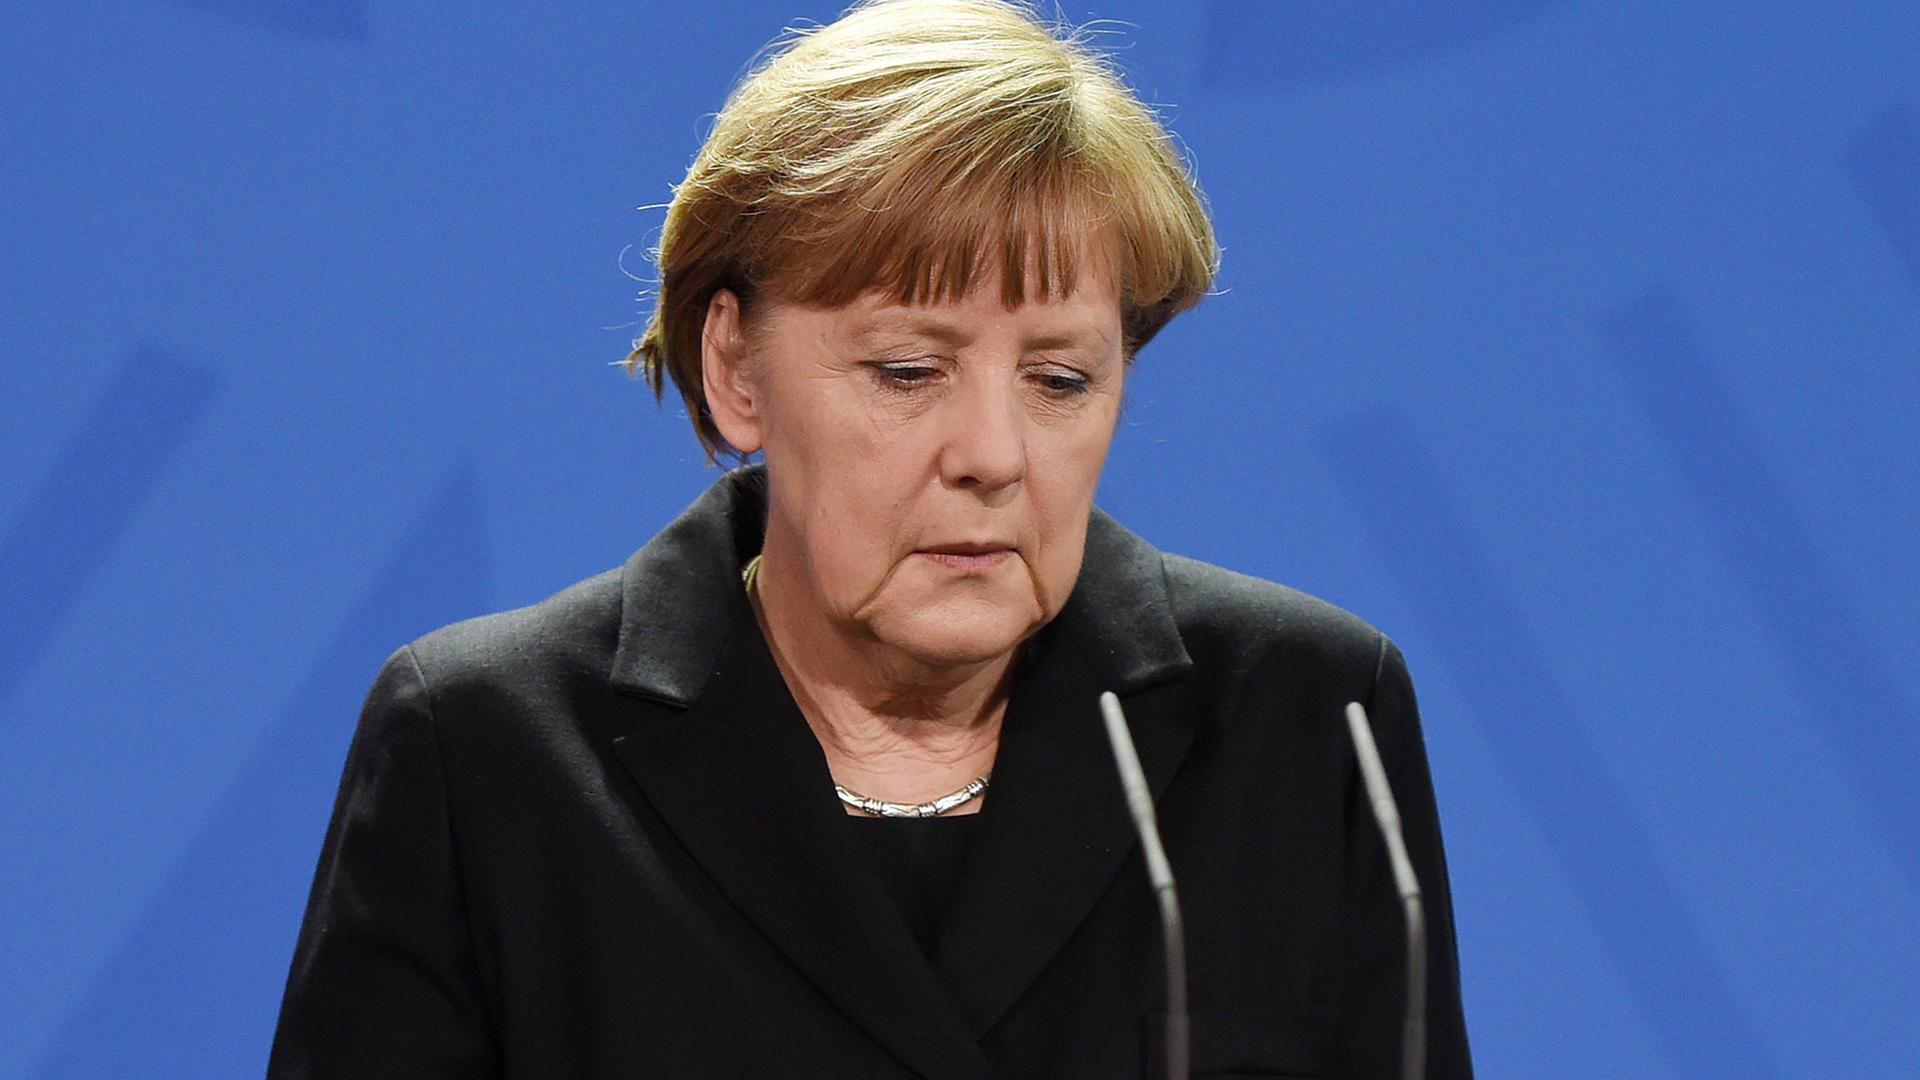 Bundeskanzlerin Angela Merkel (CDU) kommt am 26.03.2015 im Bundeskanzleramt in Berlin zu einer Pressekonferenz, um über die neuen Erkenntnisse zum Absturz der Germanwings-Maschine in Südfrankreich zu berichten.